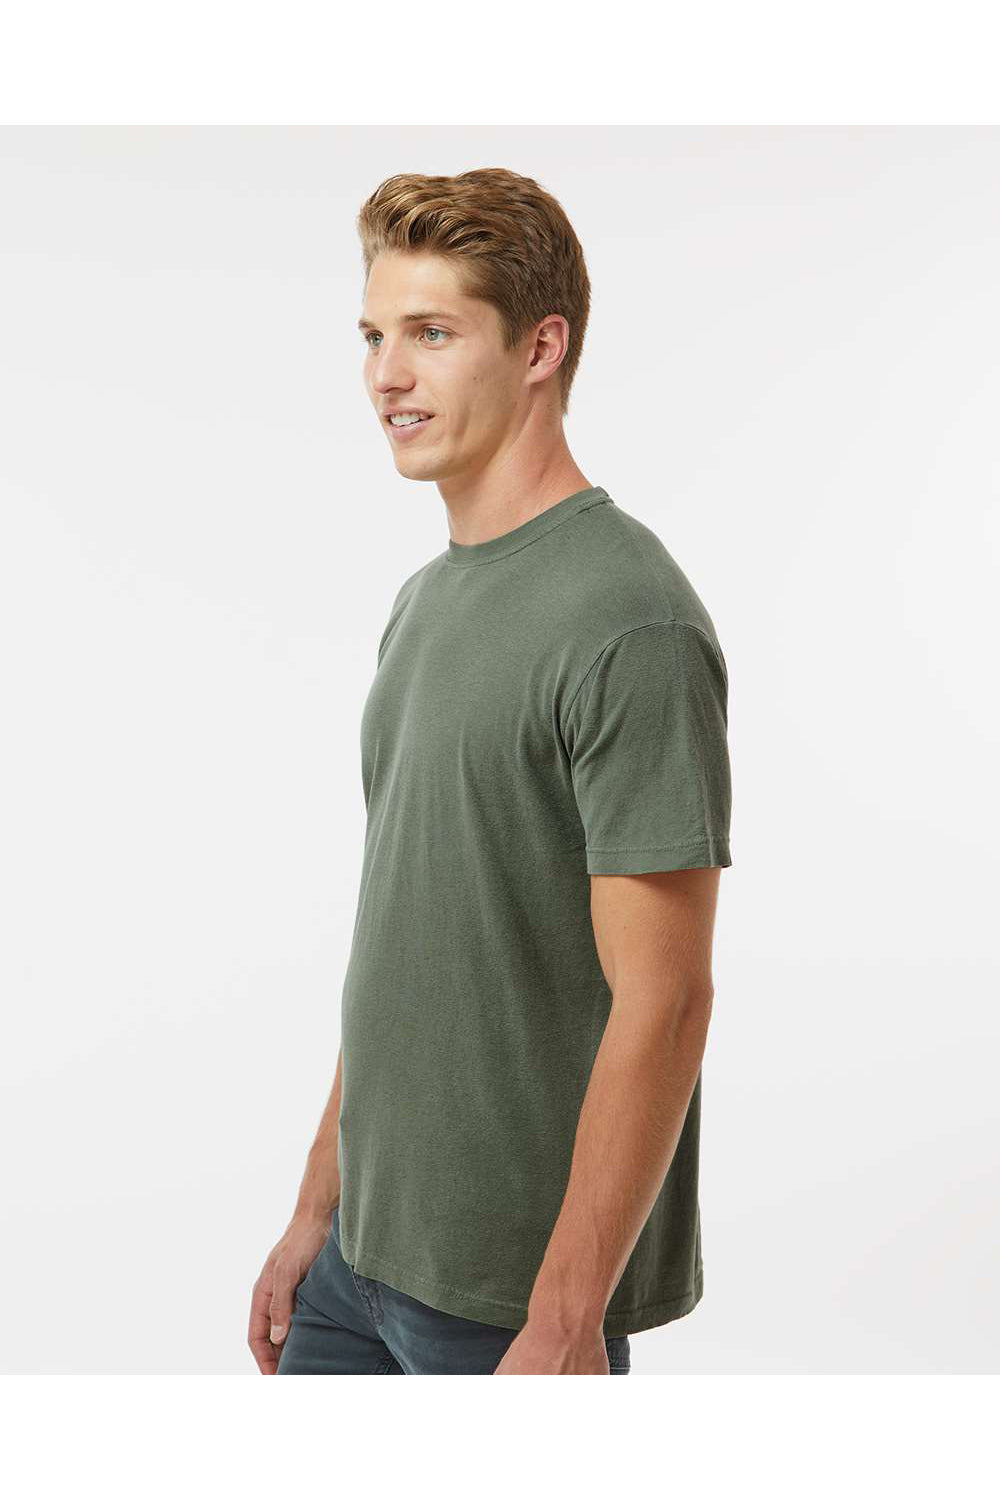 M&O 6500M Mens Vintage Garment Dyed Short Sleeve Crewneck T-Shirt Monterey Sage Green Model Side